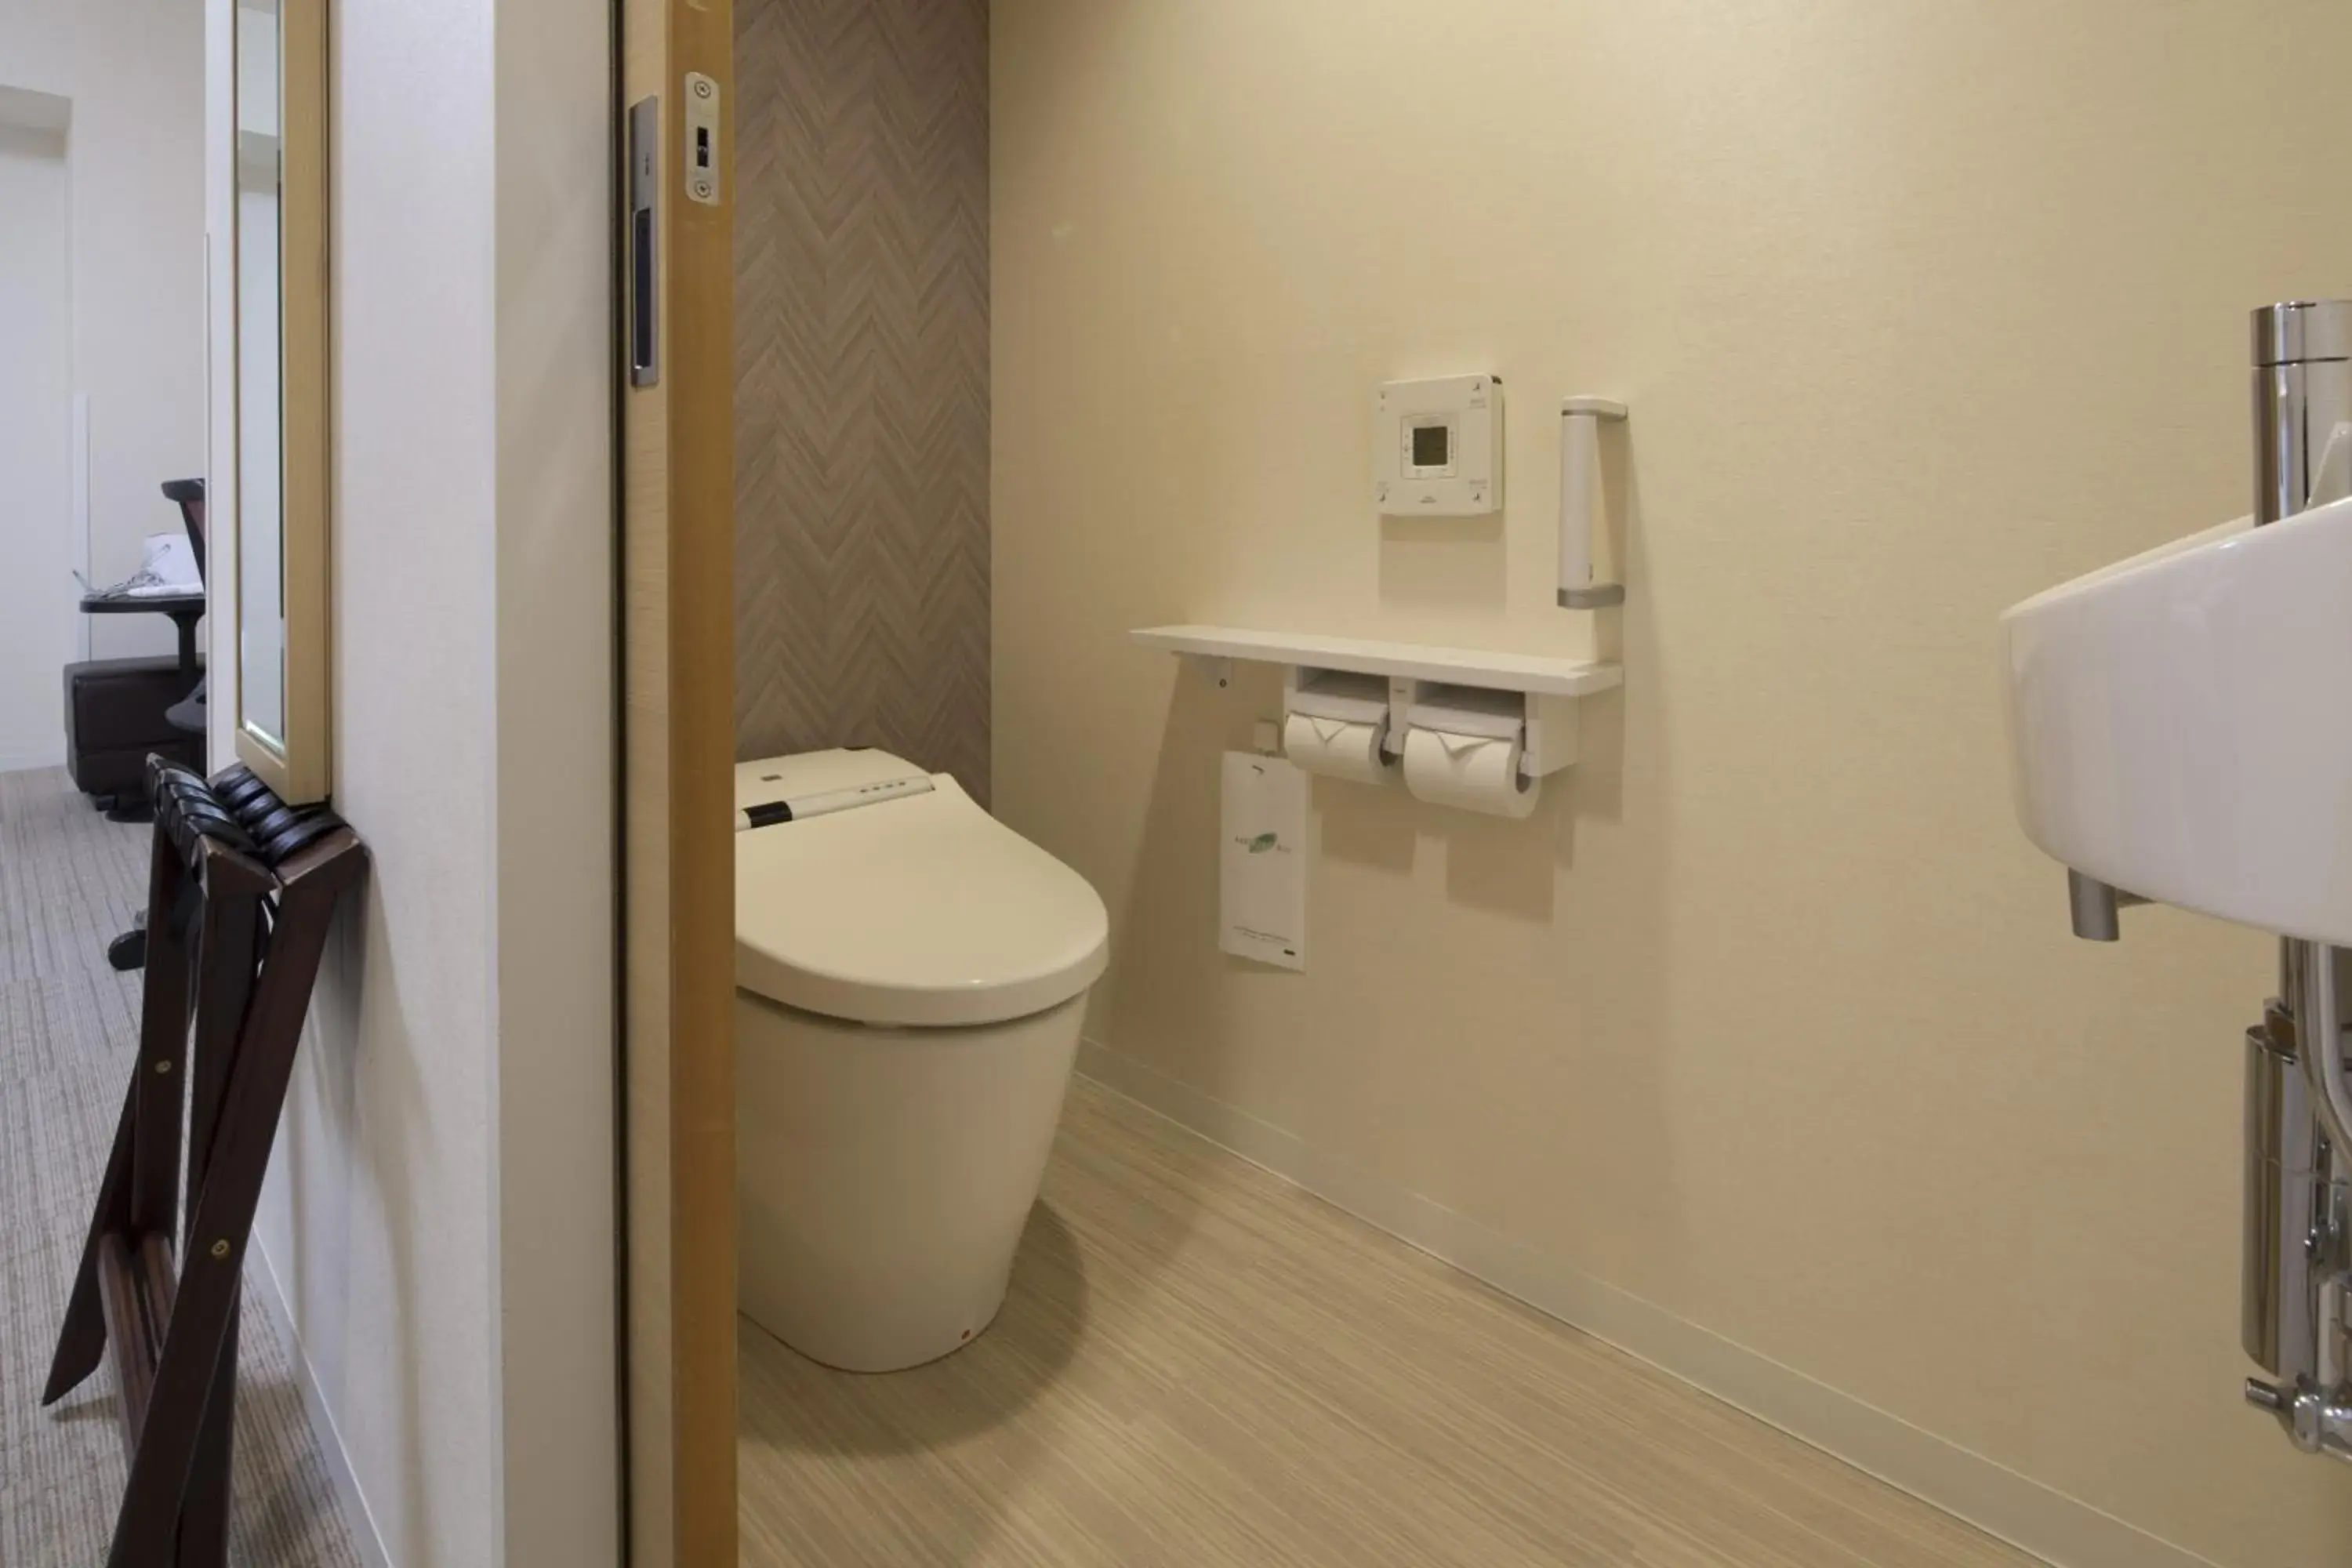 Area and facilities, Bathroom in Shizutetsu Hotel Prezio Shizuoka Ekinan